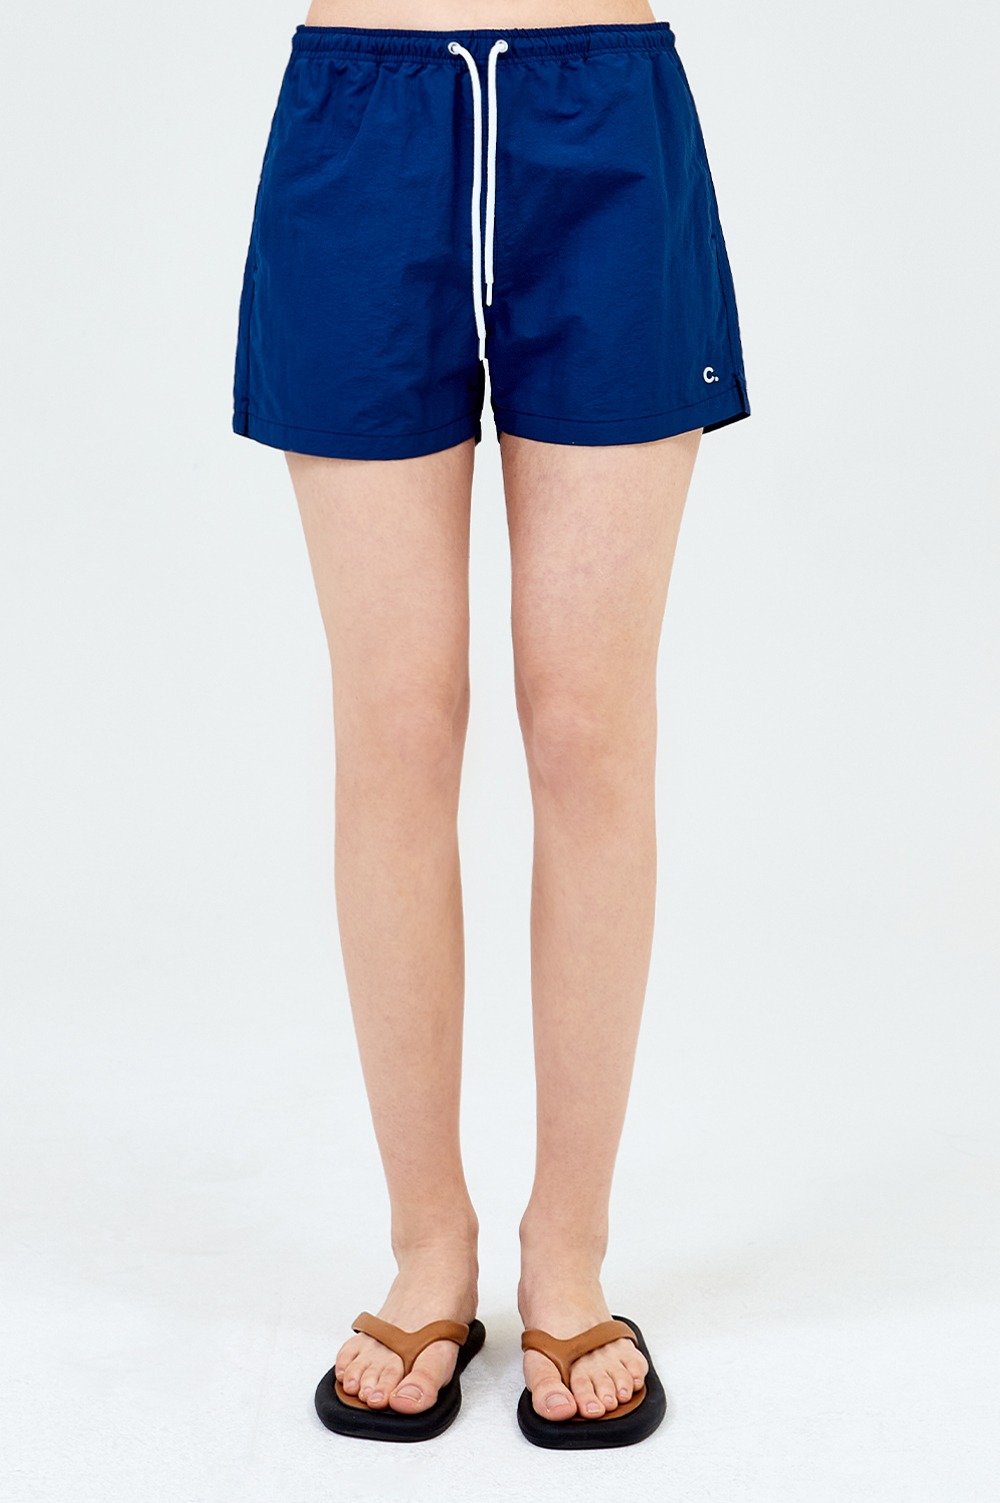 clove - [23SS clove] Summer Shorts_Women (Navy)